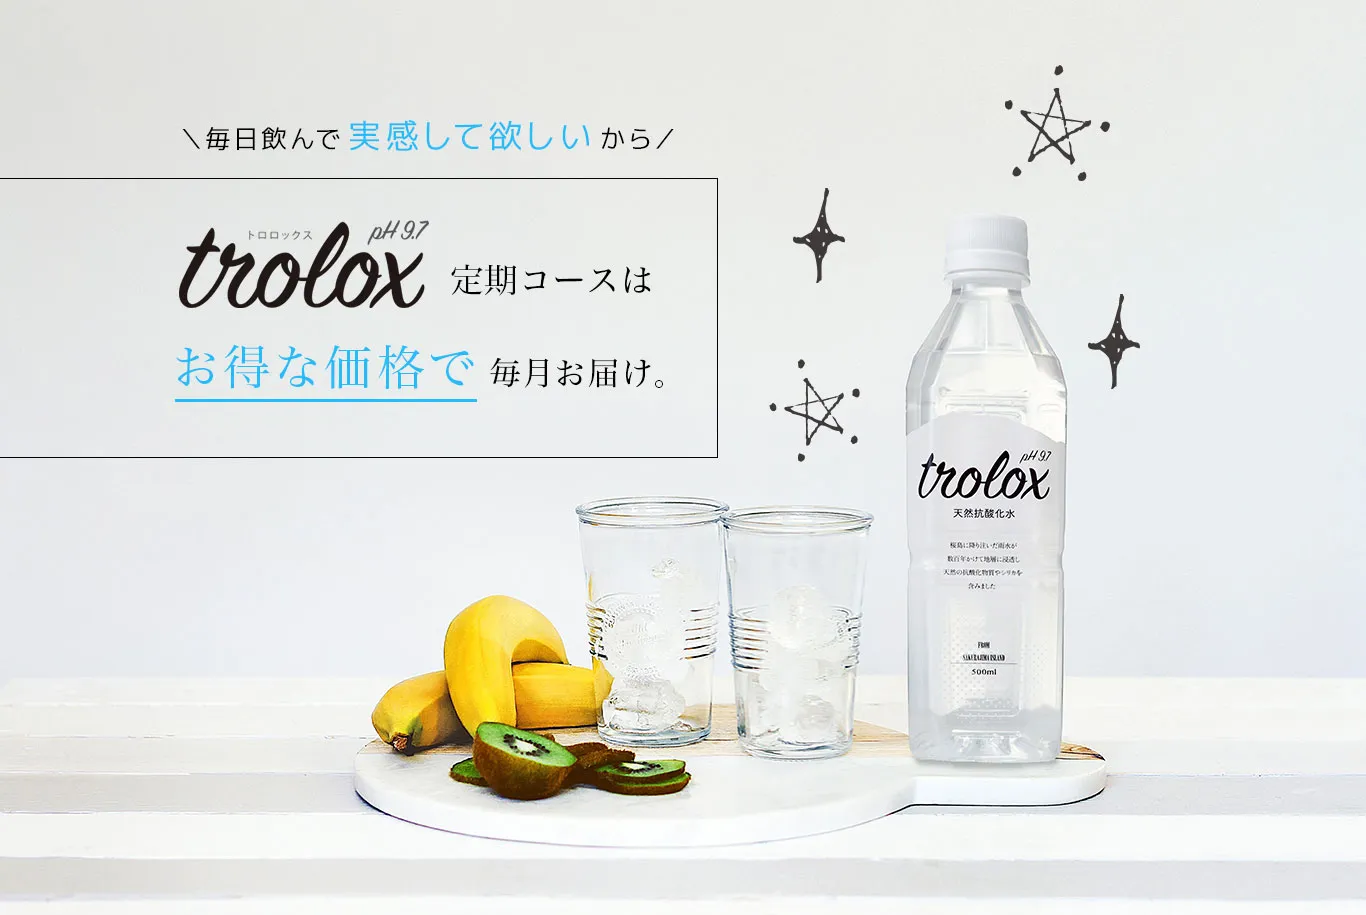 毎日飲んで実感して欲しいから、Trolox定期コースはお得な価格で毎月お届け。